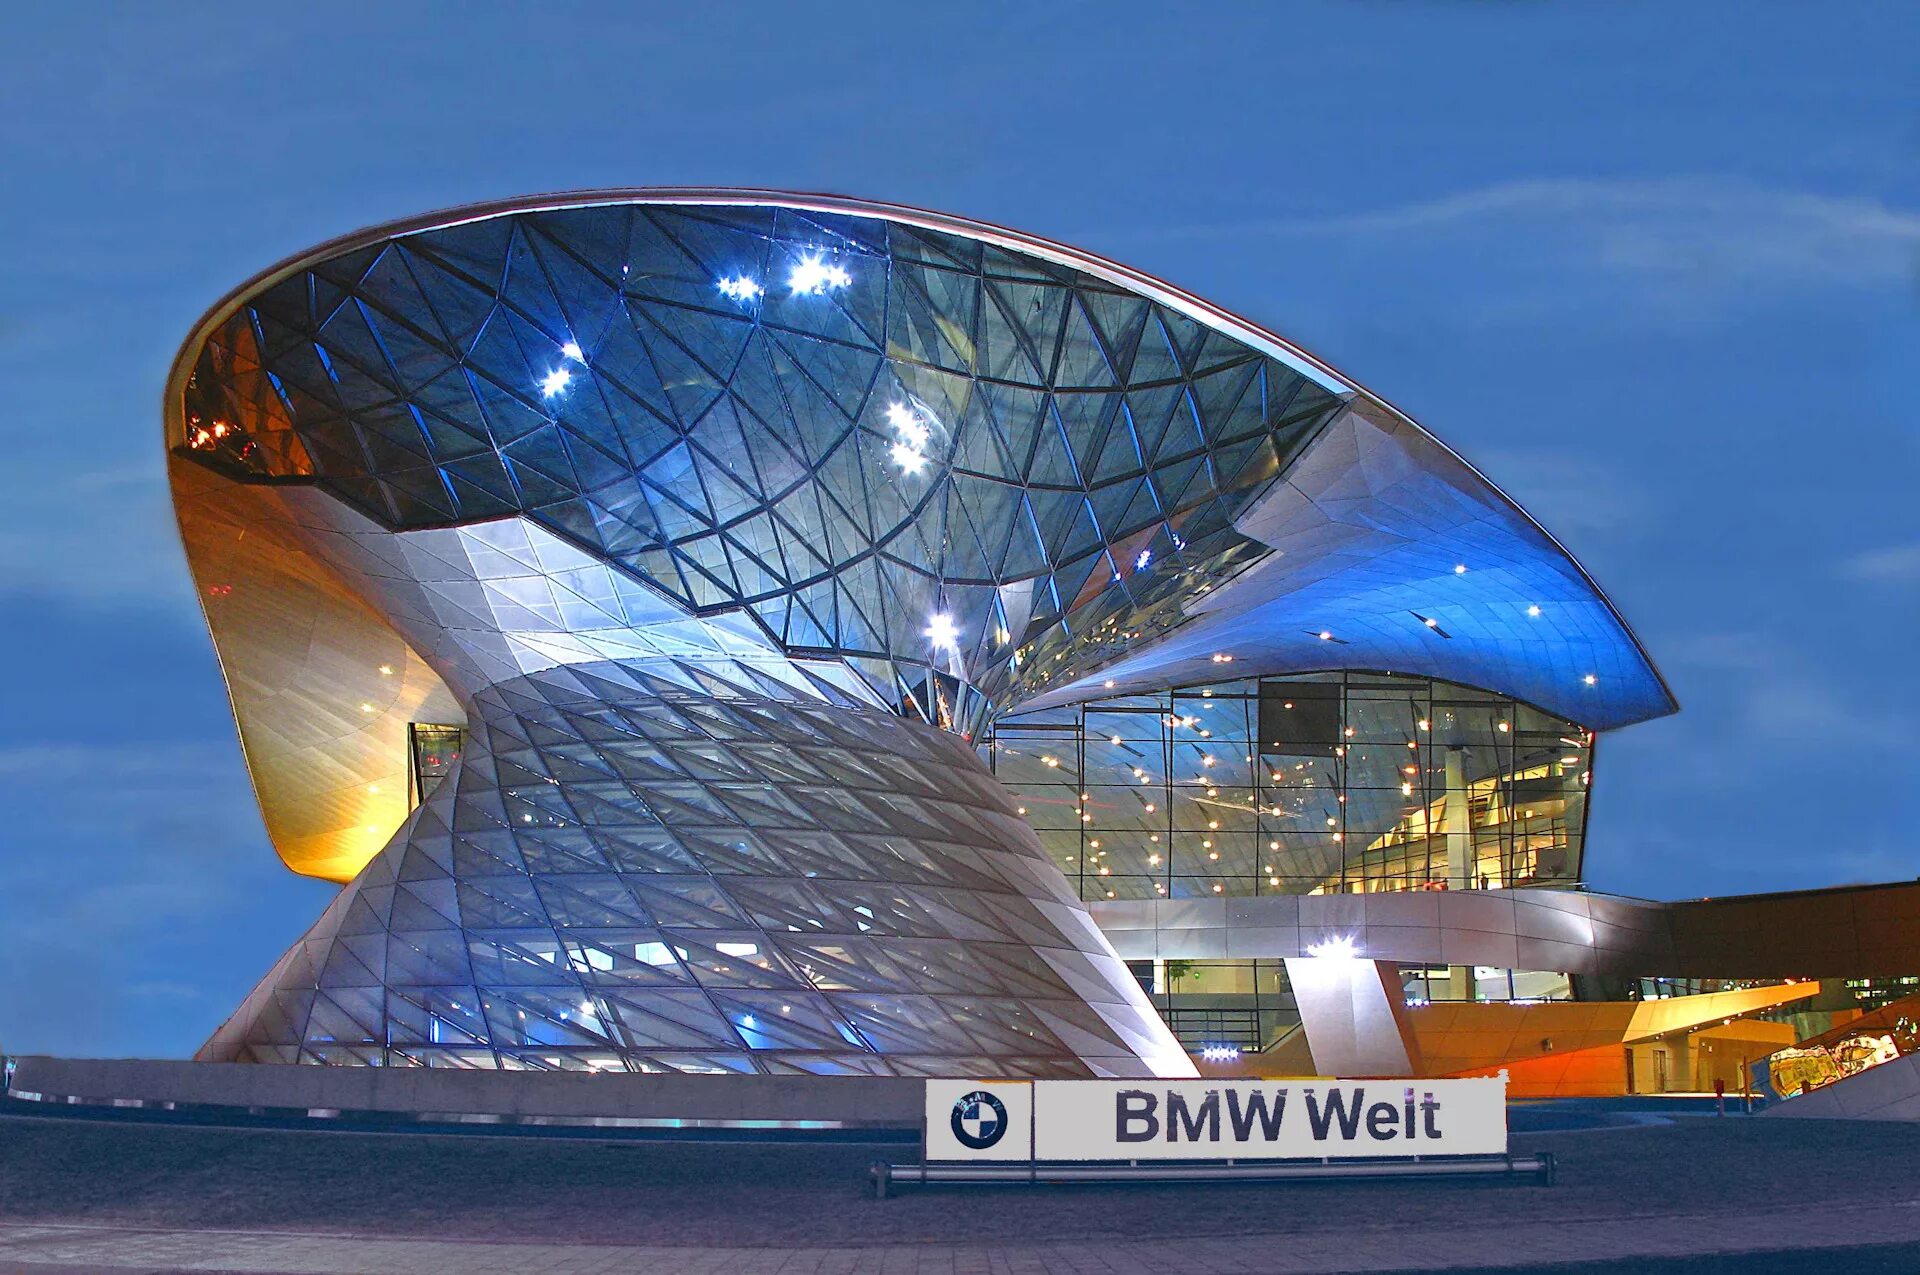 Выставочное здание. Музей БМВ В Мюнхене. BMW Welt Мюнхен. Выставочное здание BMW Welt, Мюнхен, Германия. Музей «BMW Welt» в Мюнхене.